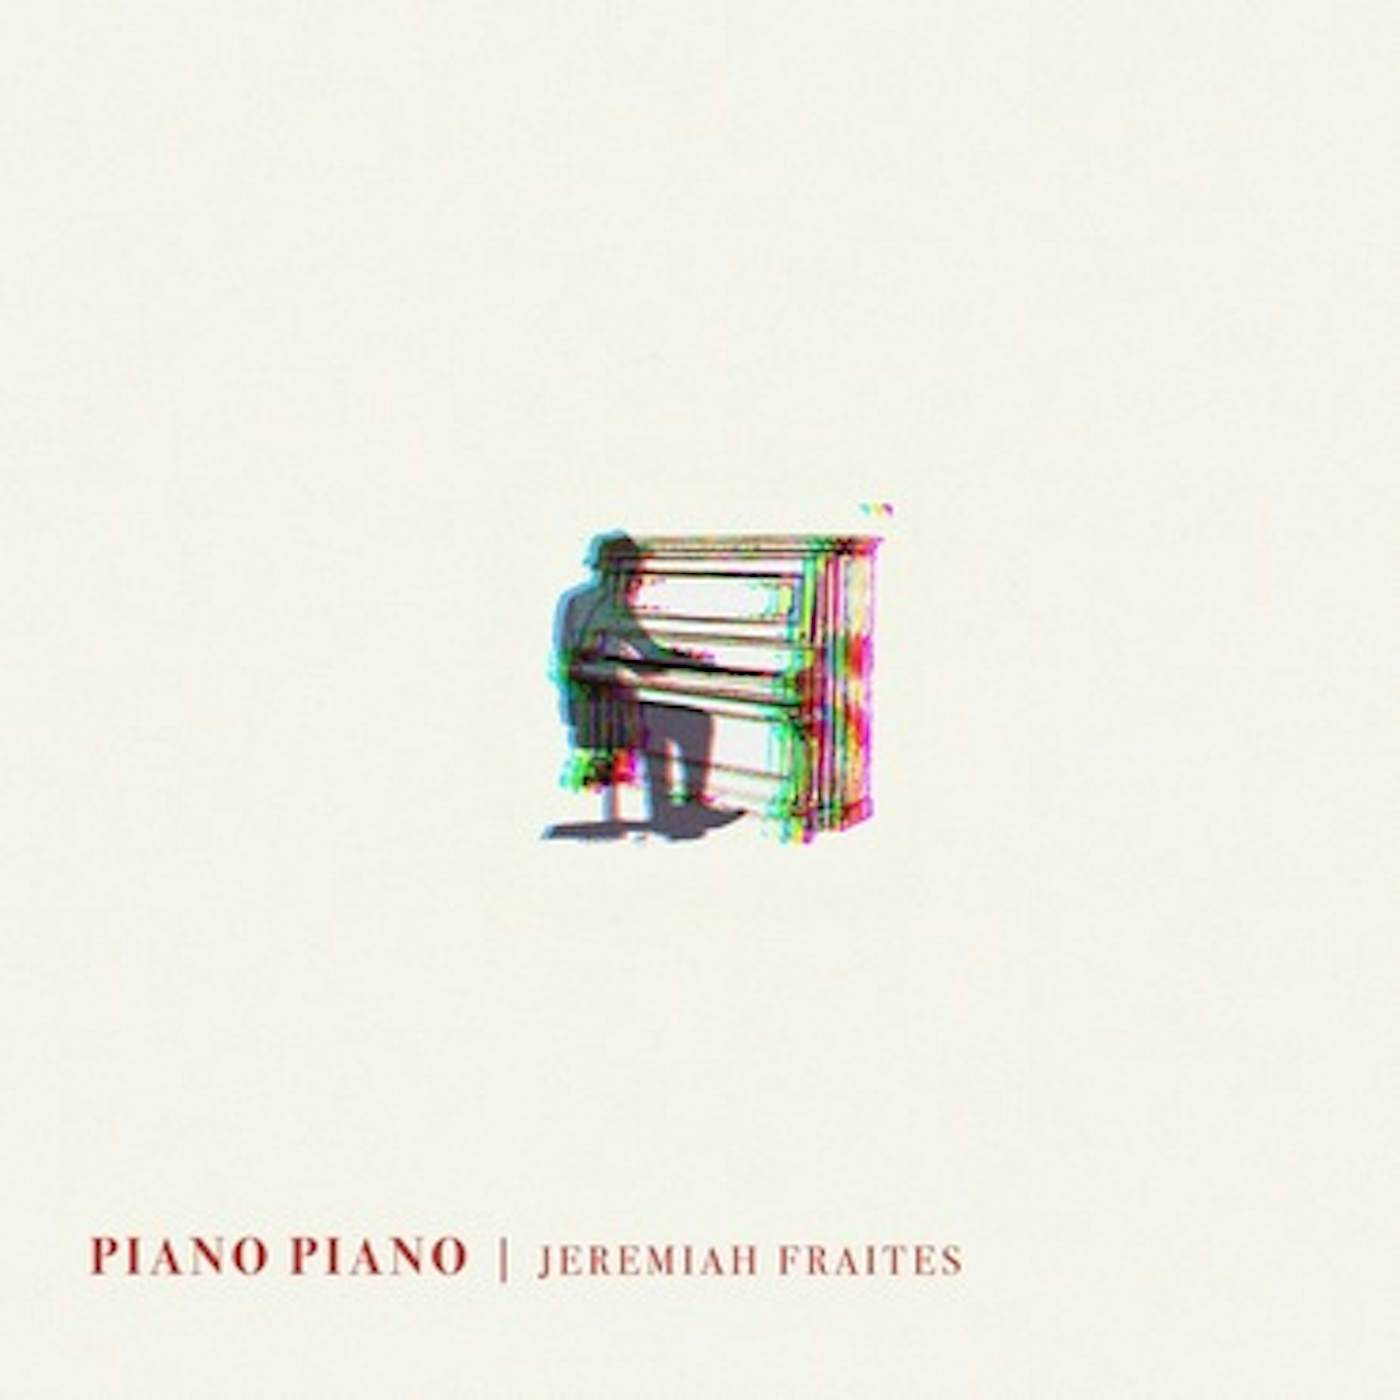 Jeremiah Fraites Piano Piano Vinyl Record